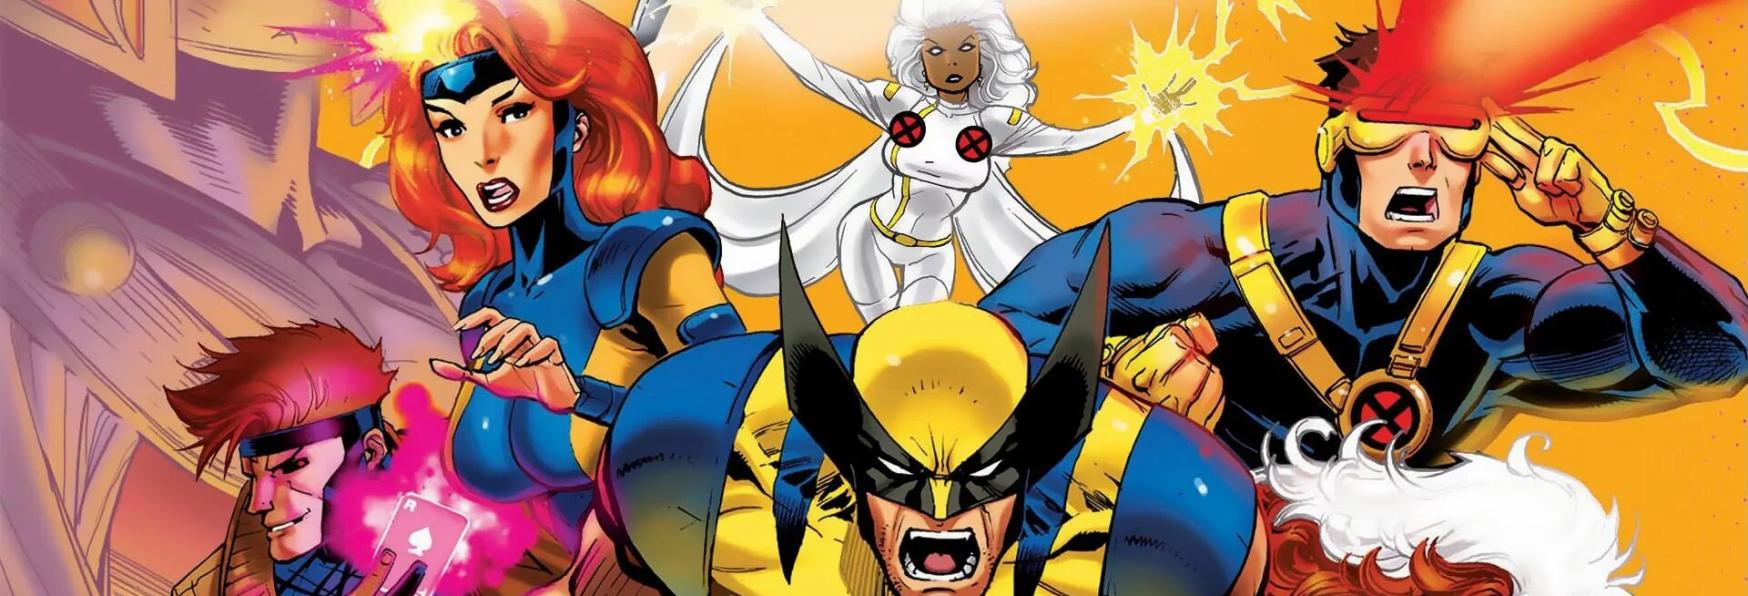 X-Men '97: il Trailer e la Data di Uscita della Serie Animata di Disney+